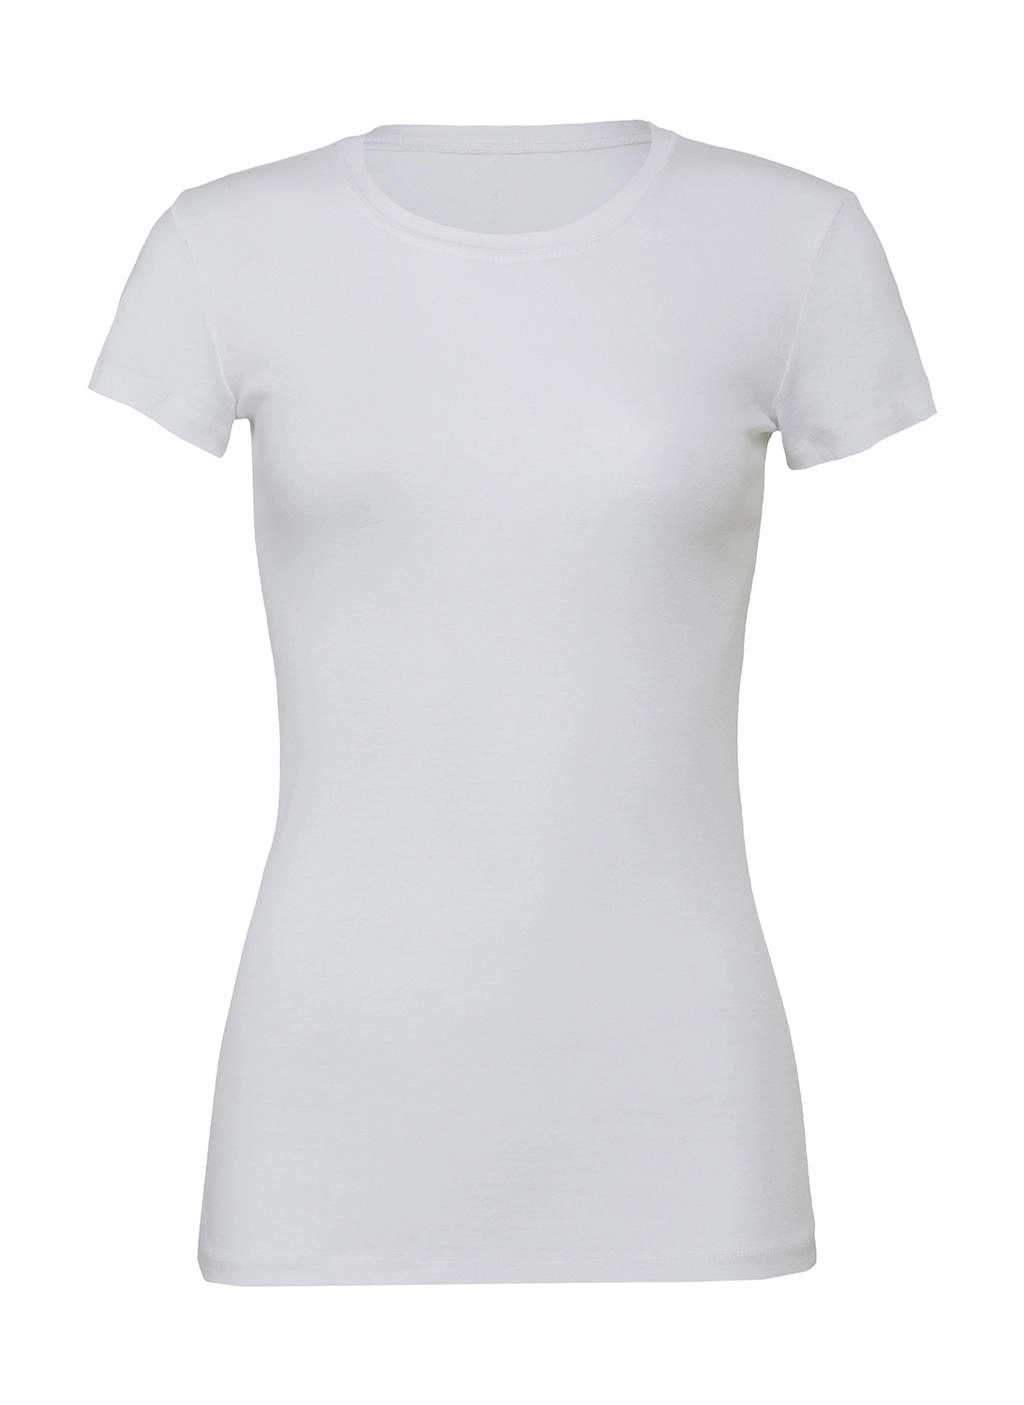 The Favorite T-Shirt zum Besticken und Bedrucken in der Farbe White mit Ihren Logo, Schriftzug oder Motiv.